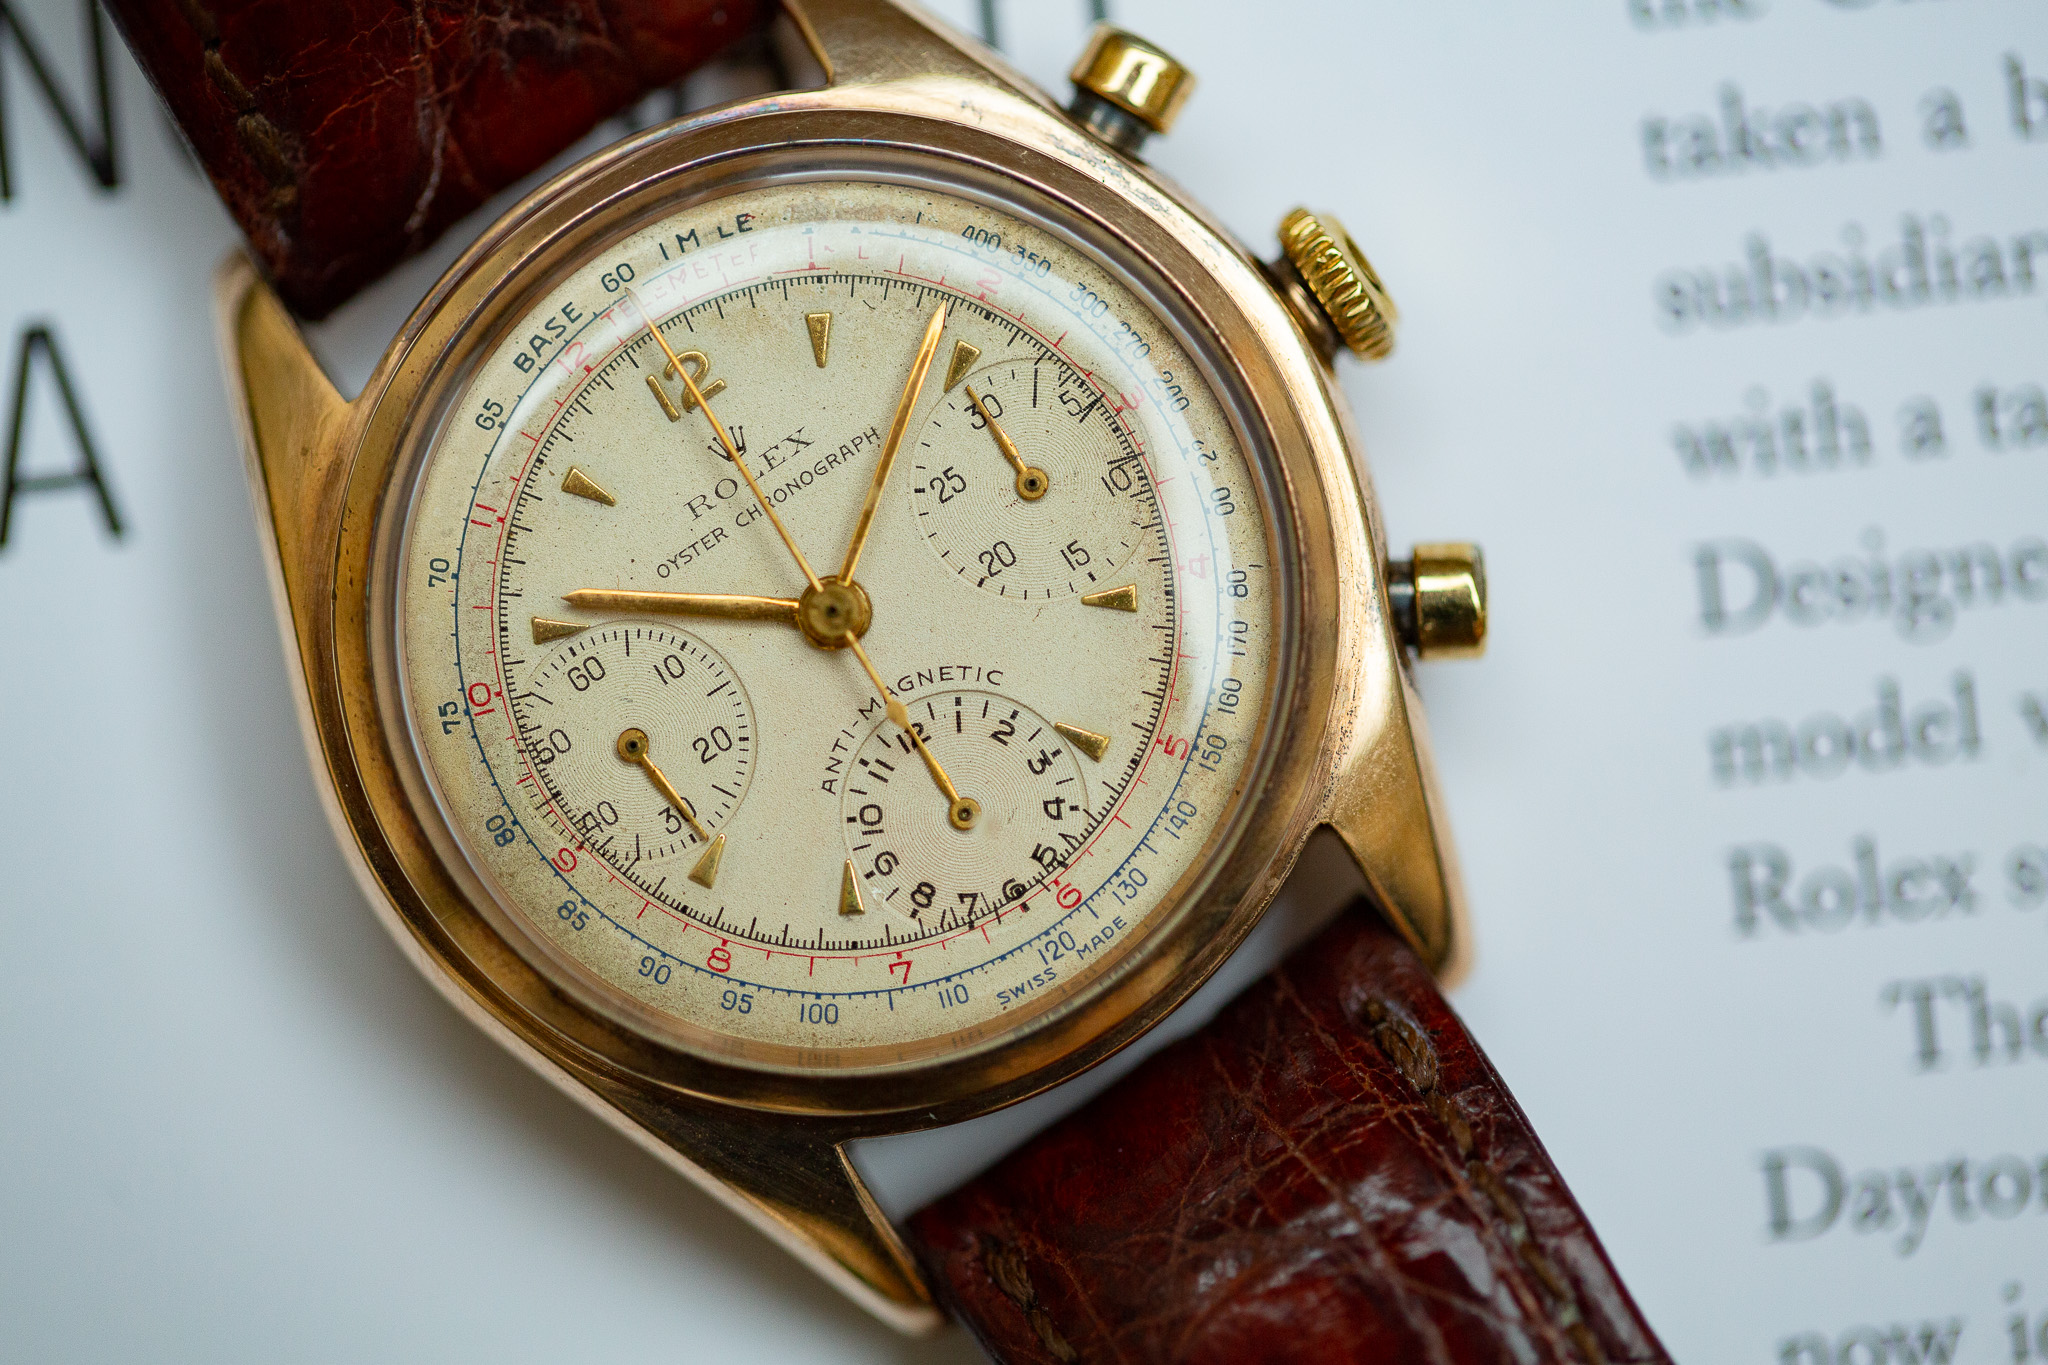 Rolex chronographe 4537 - Bonhams Cornette de Saint Cyr